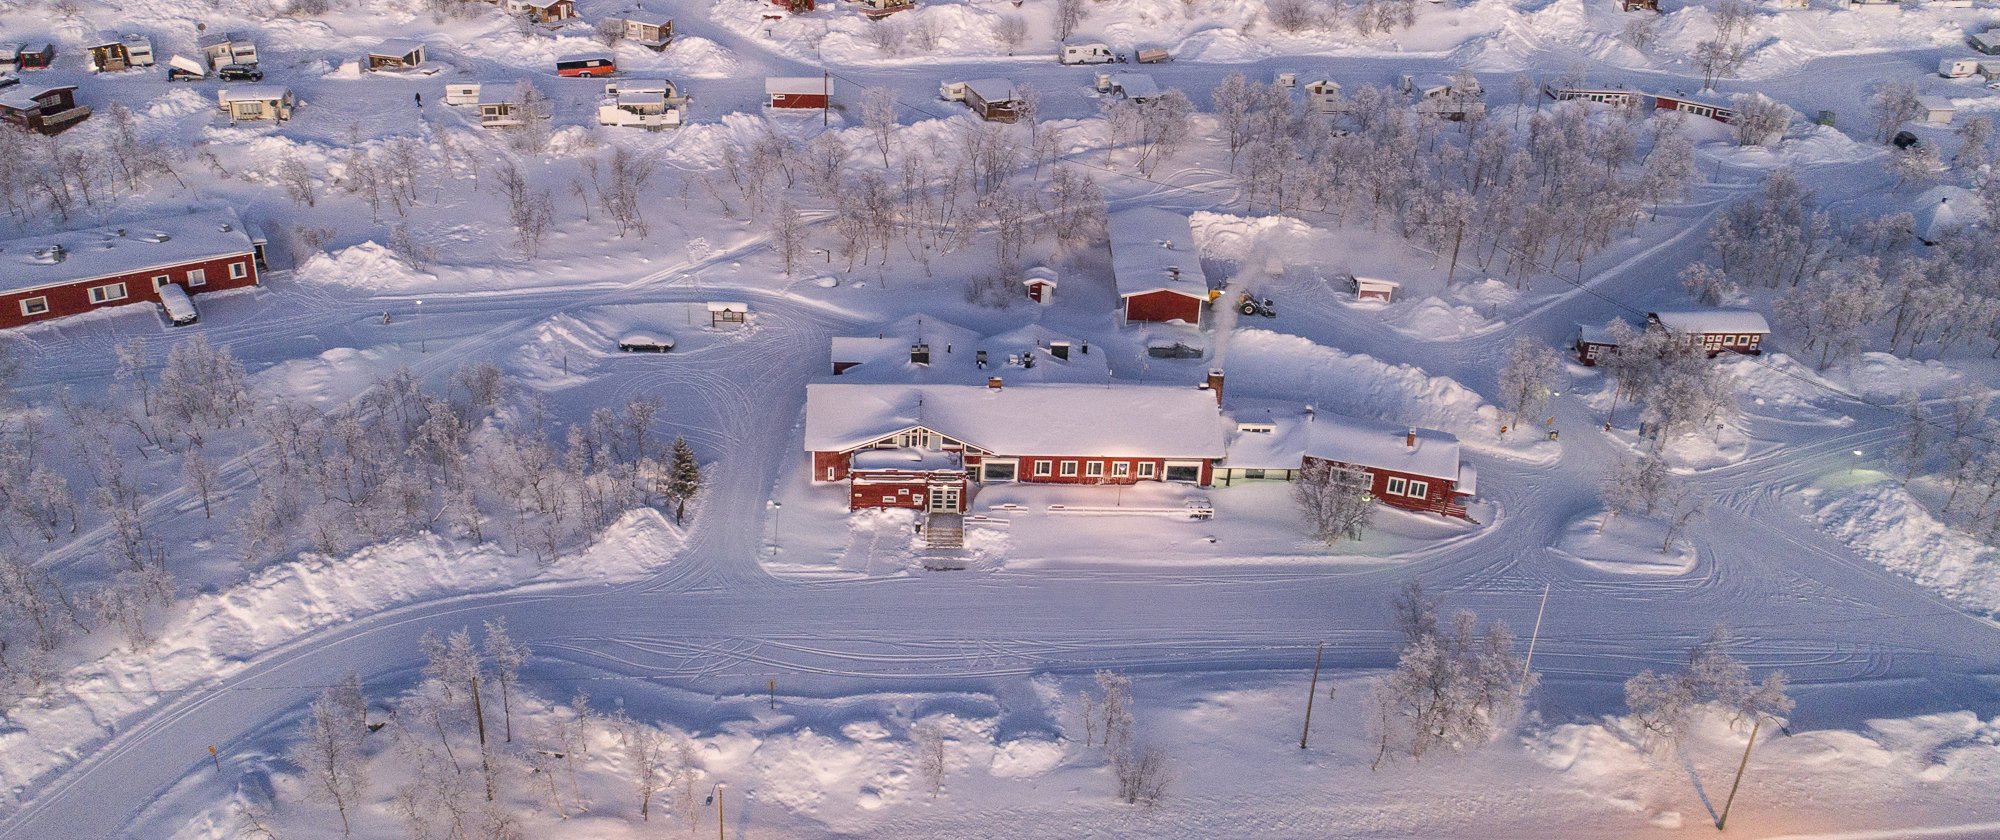 Kilpisjärven Retkeilykeskus vuonna 2019 kuvattuna ylhäältä päin talvisessa maisemassa